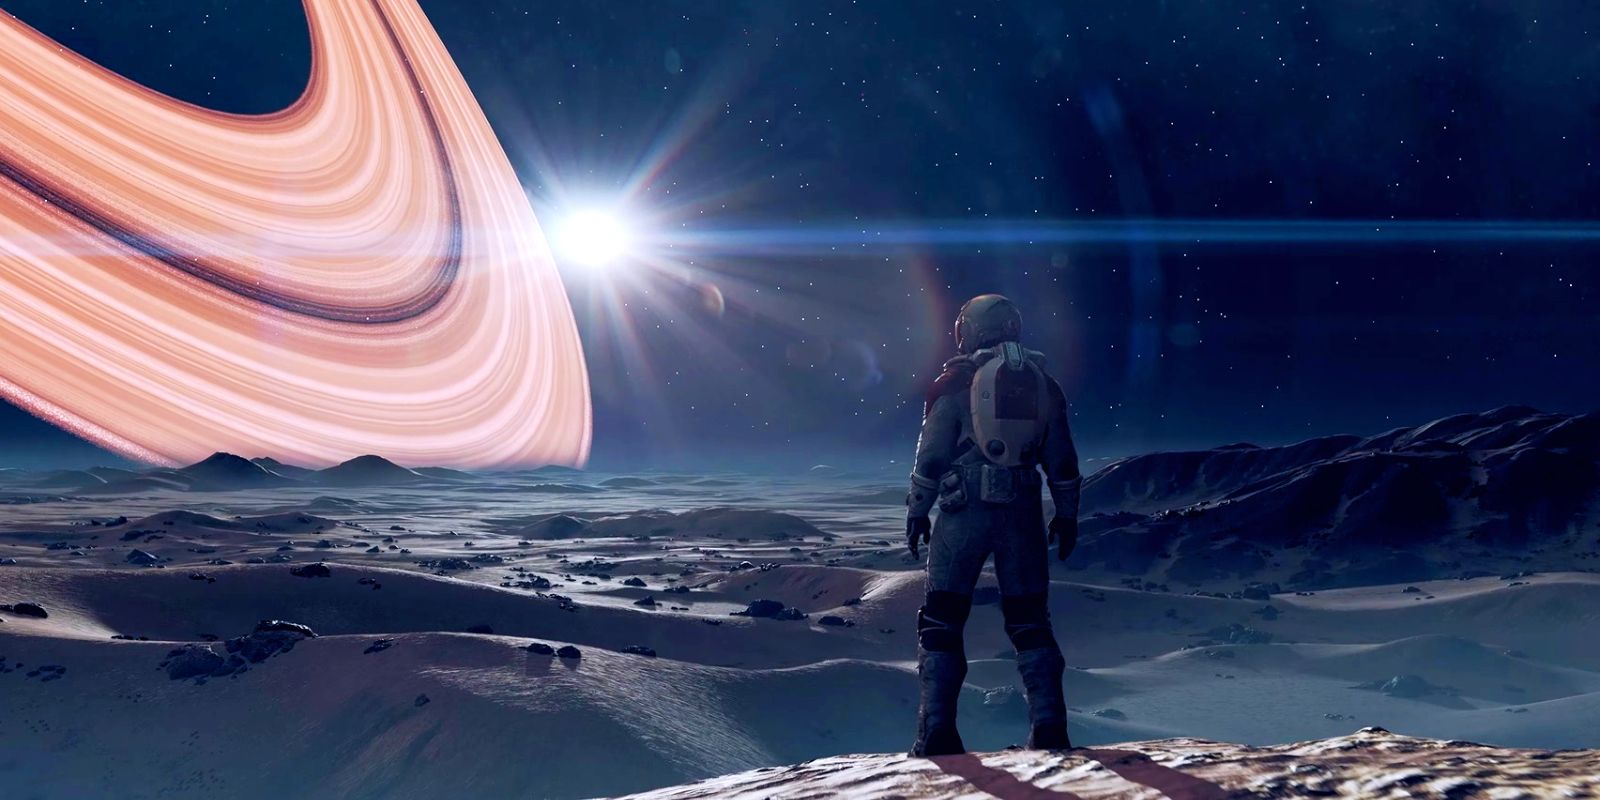 Um personagem de Starfield em um traje espacial está em uma colina, com vista para a paisagem rochosa de uma lua.  Os anéis laranja brilhantes de um planeta dominam o céu, próximo a uma estrela brilhante.